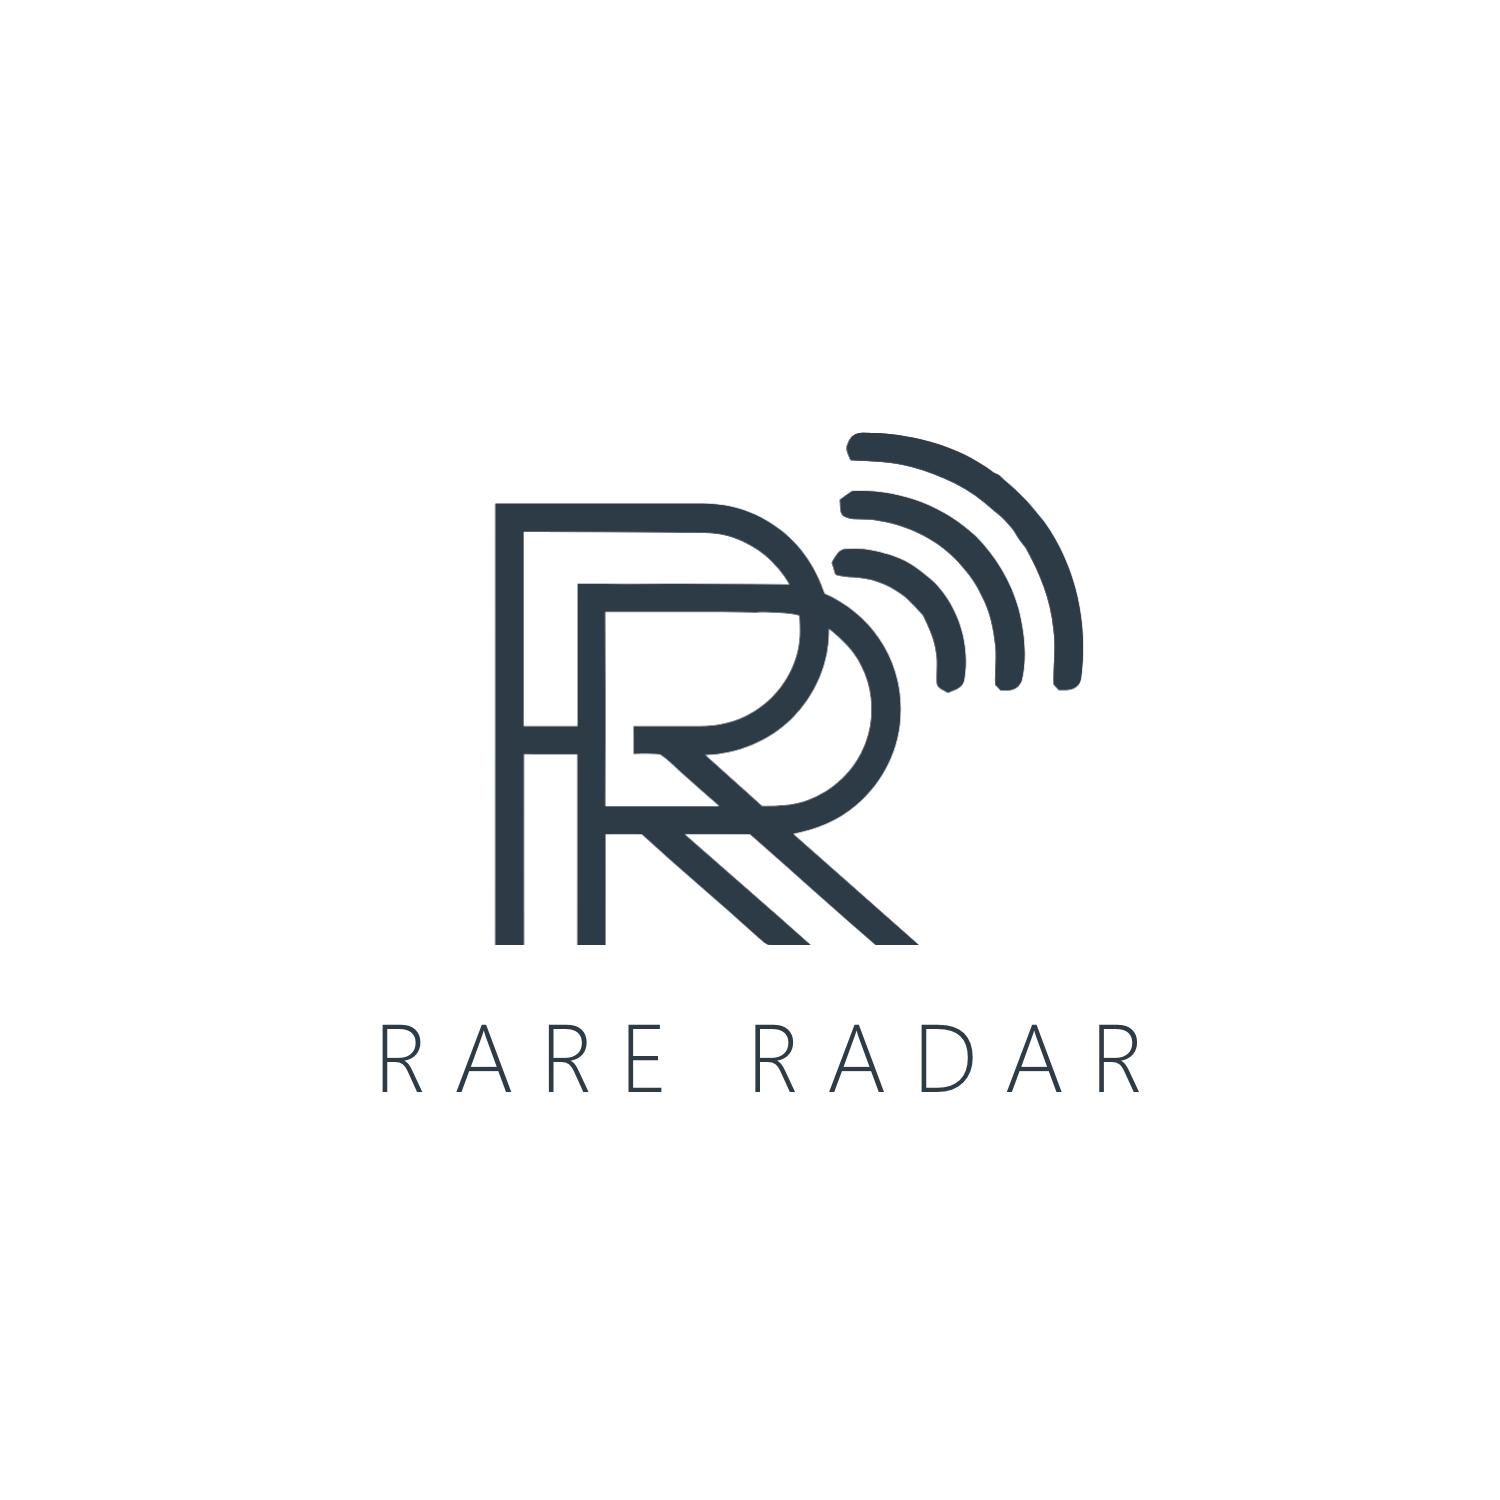 Rare Radar